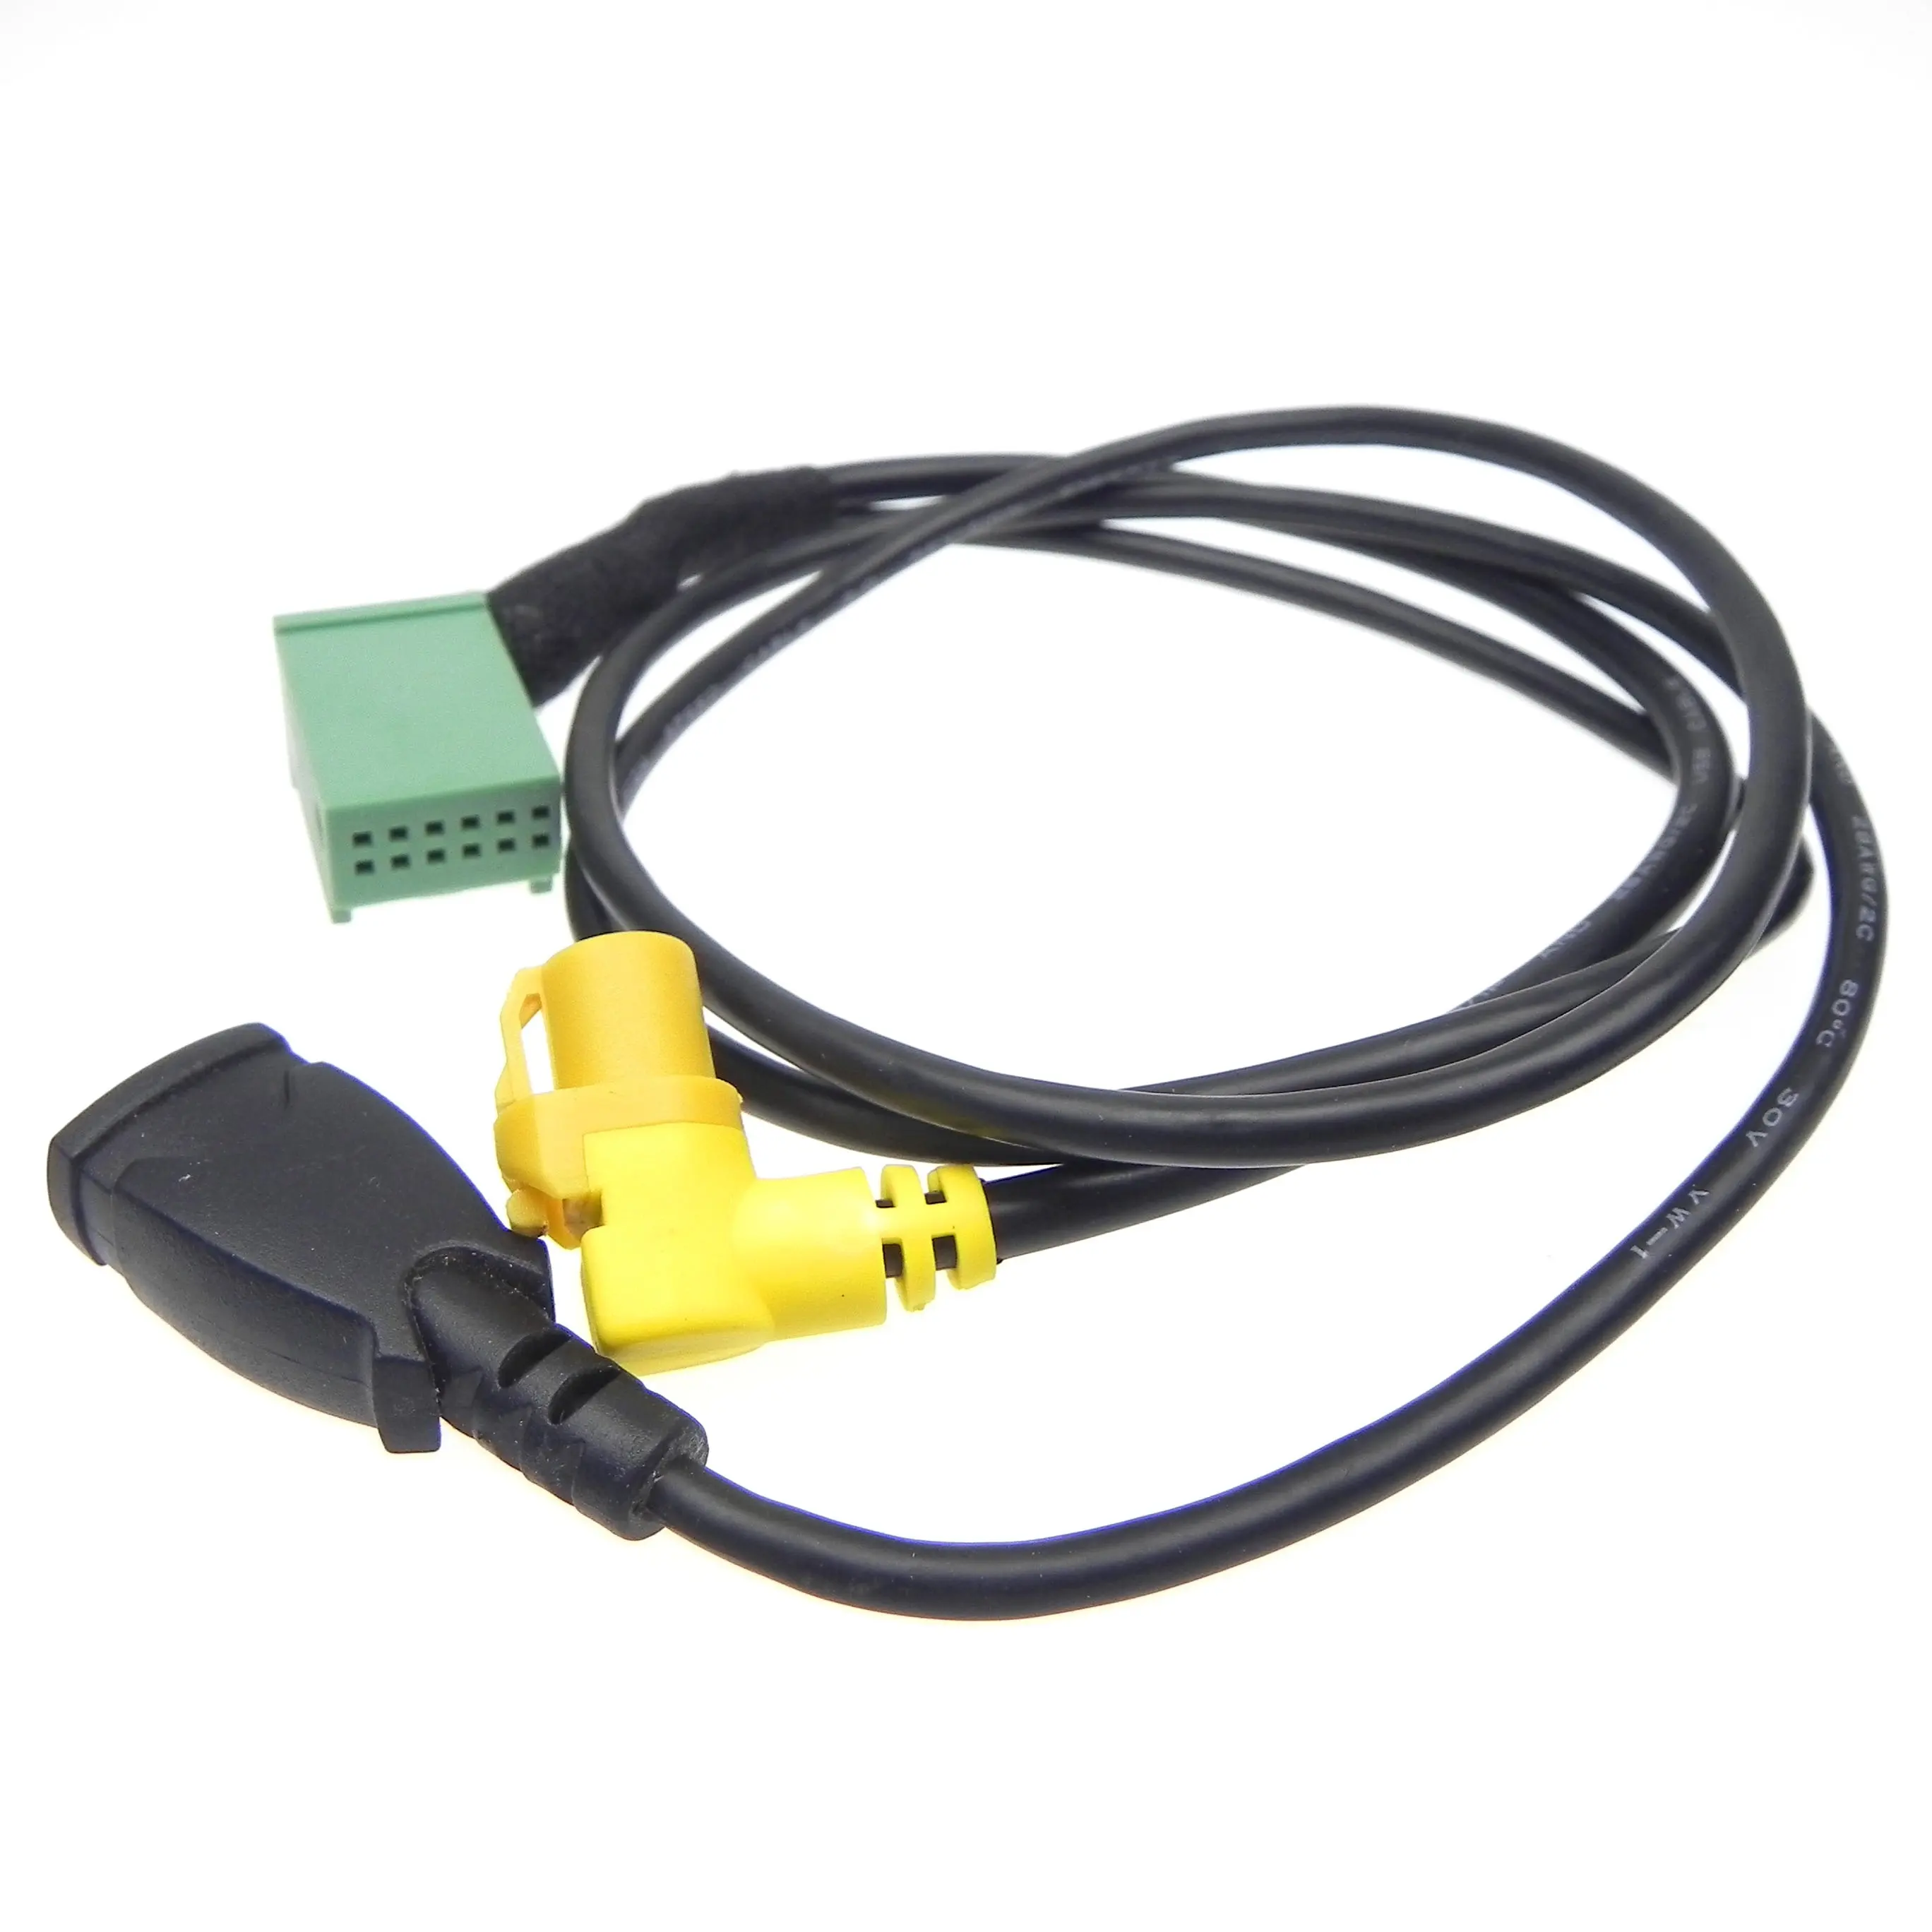 Original 12pin MMI 3G AMI USB cable for Q5 A6L A4L Q7 A5 S5 91CM length